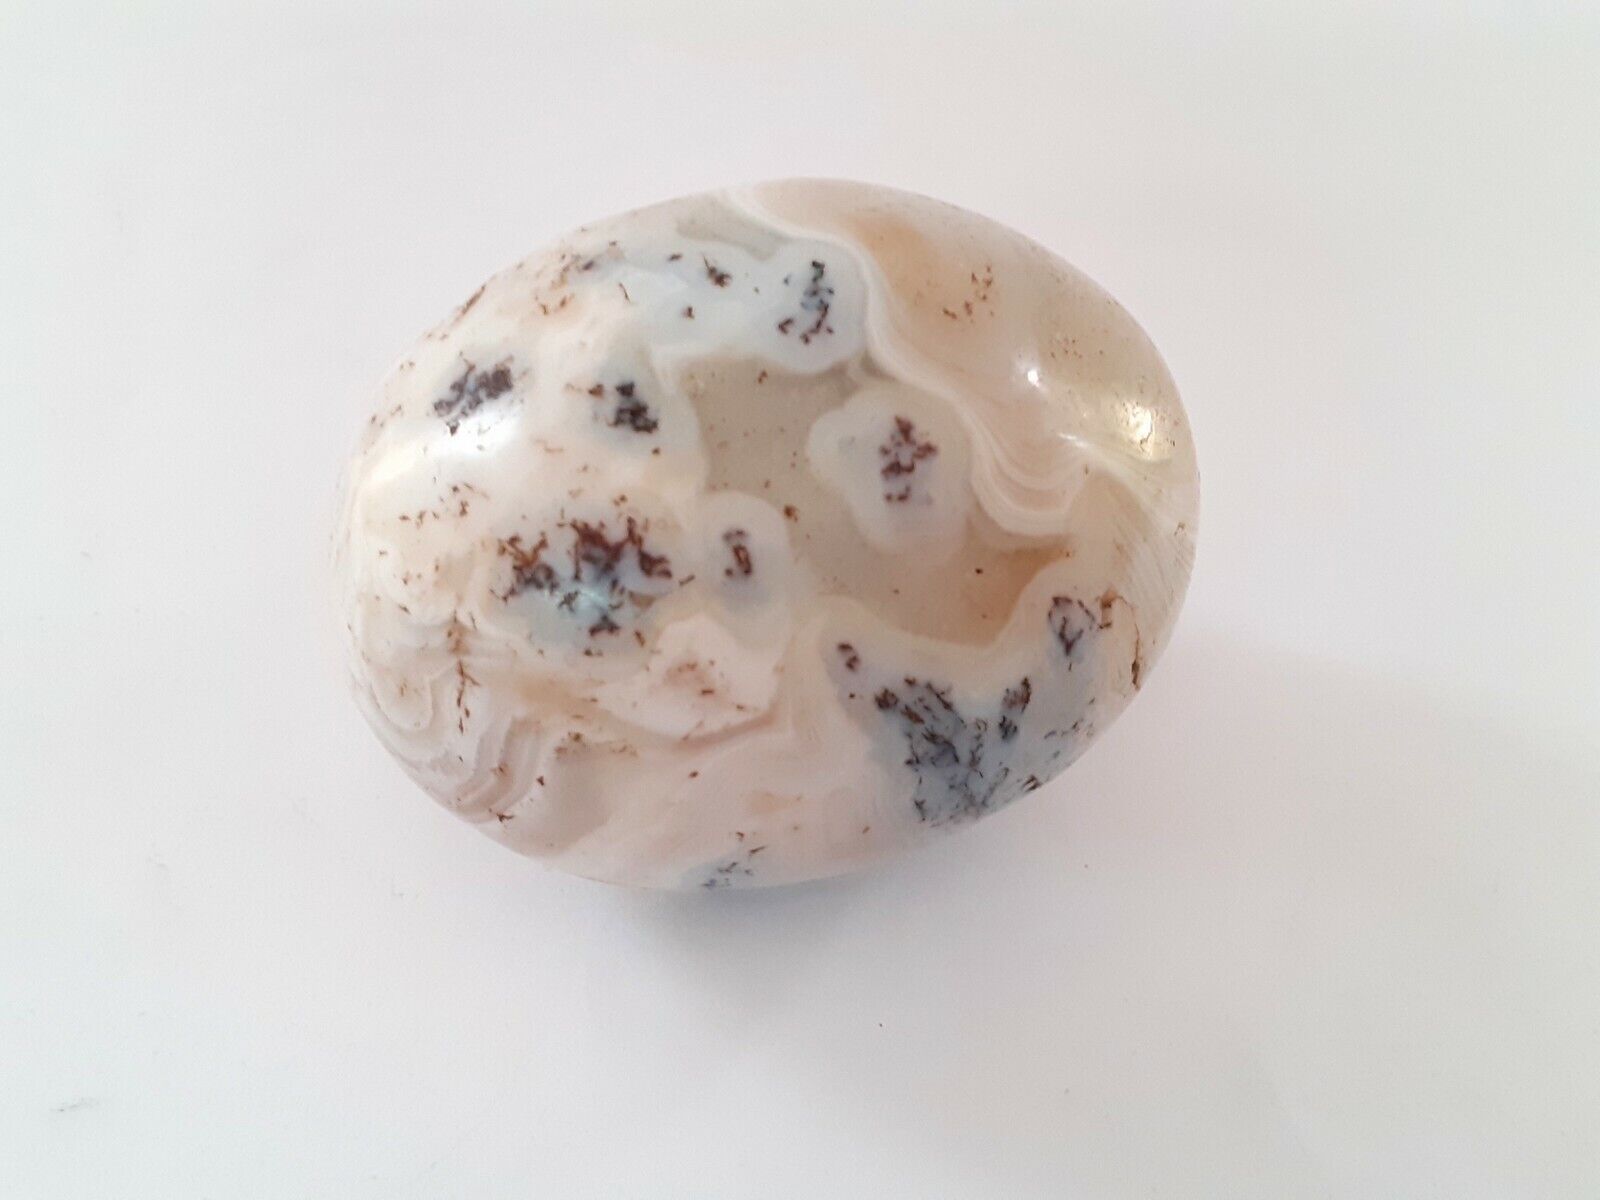 Rarest Antique Old Agate Stone Ball Egg Shape Unique Décor Collectible.G38-29 